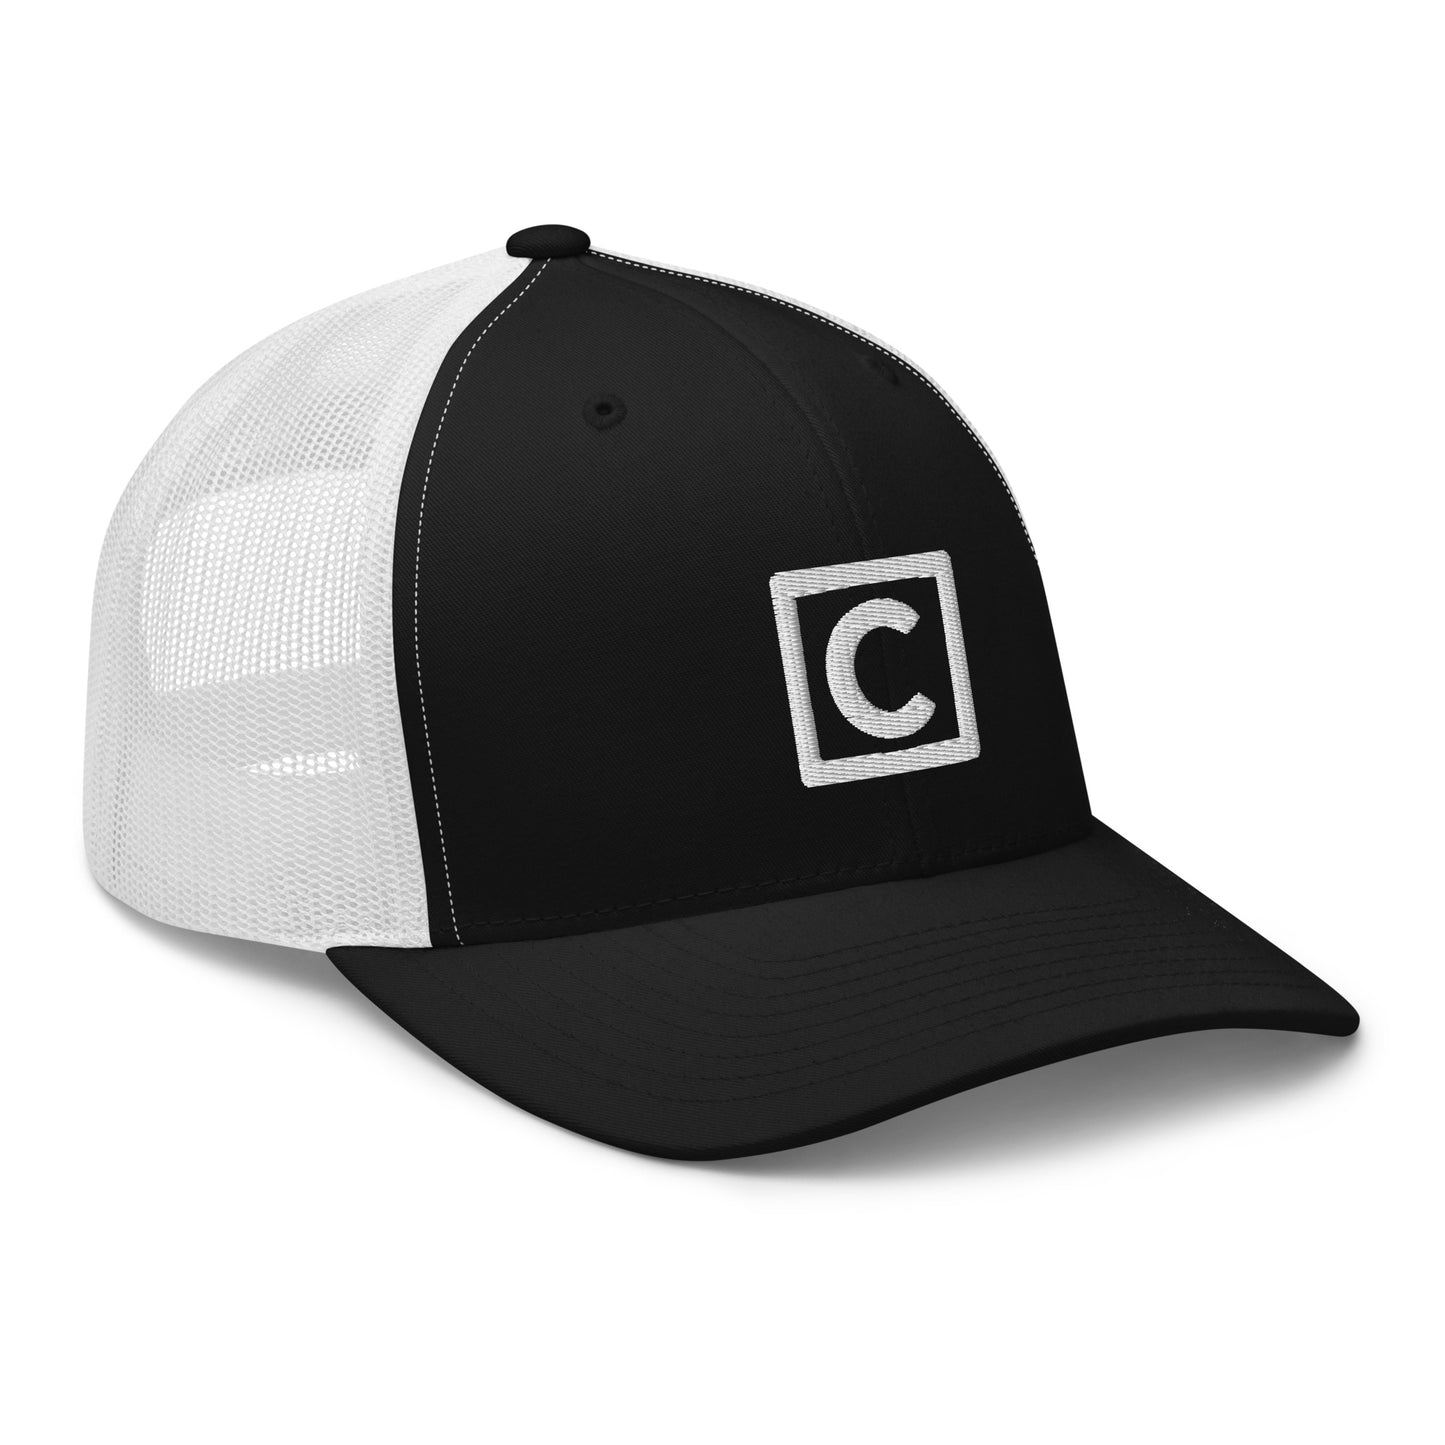 City C - Trucker Cap